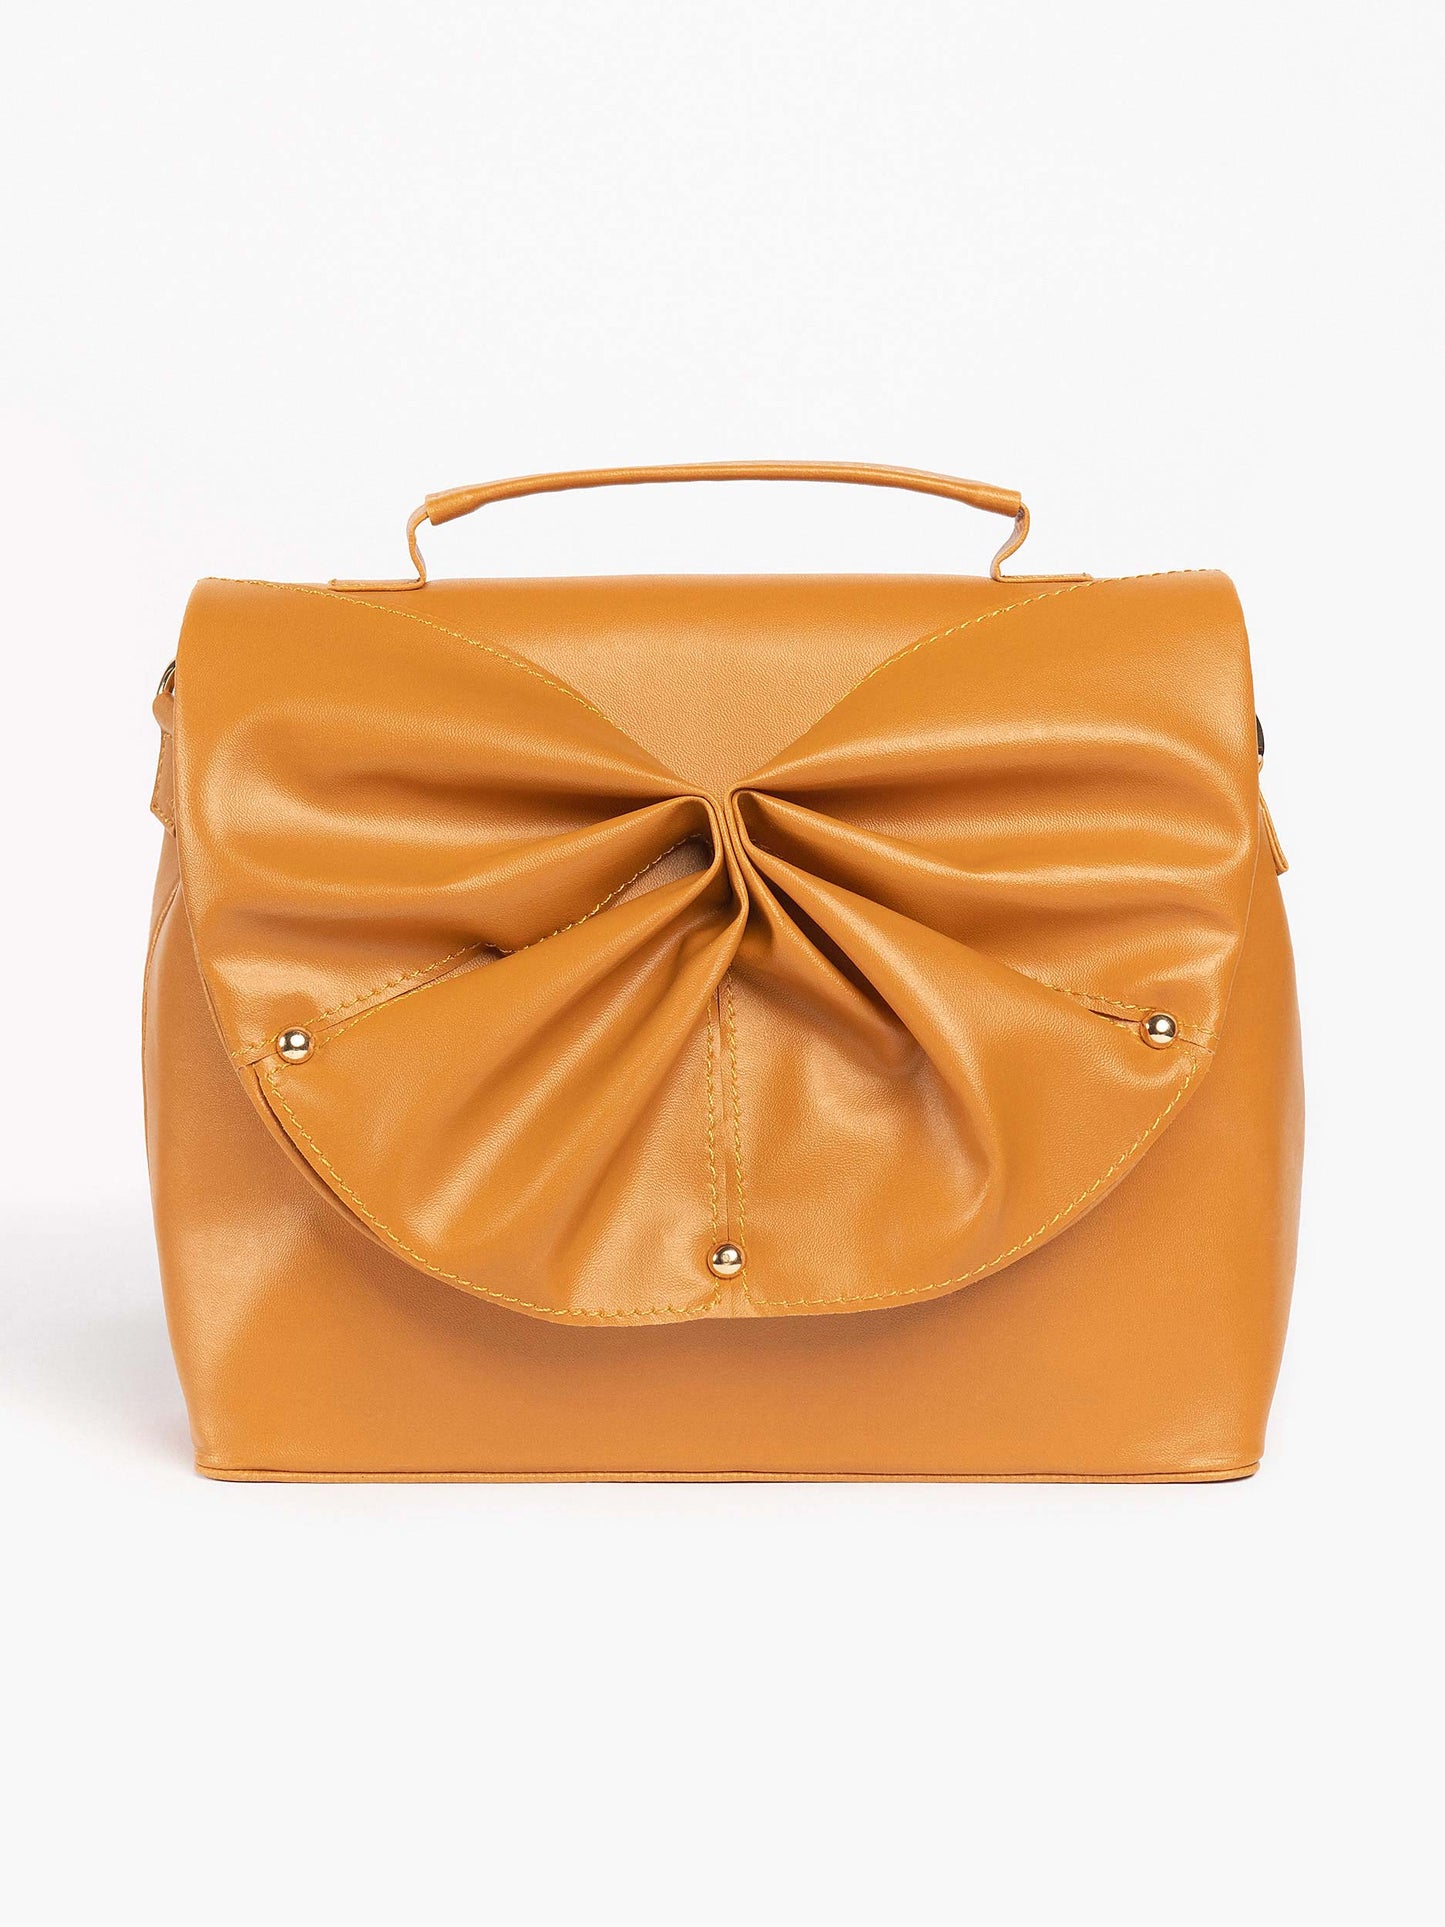 Studded Butterfly Handbag